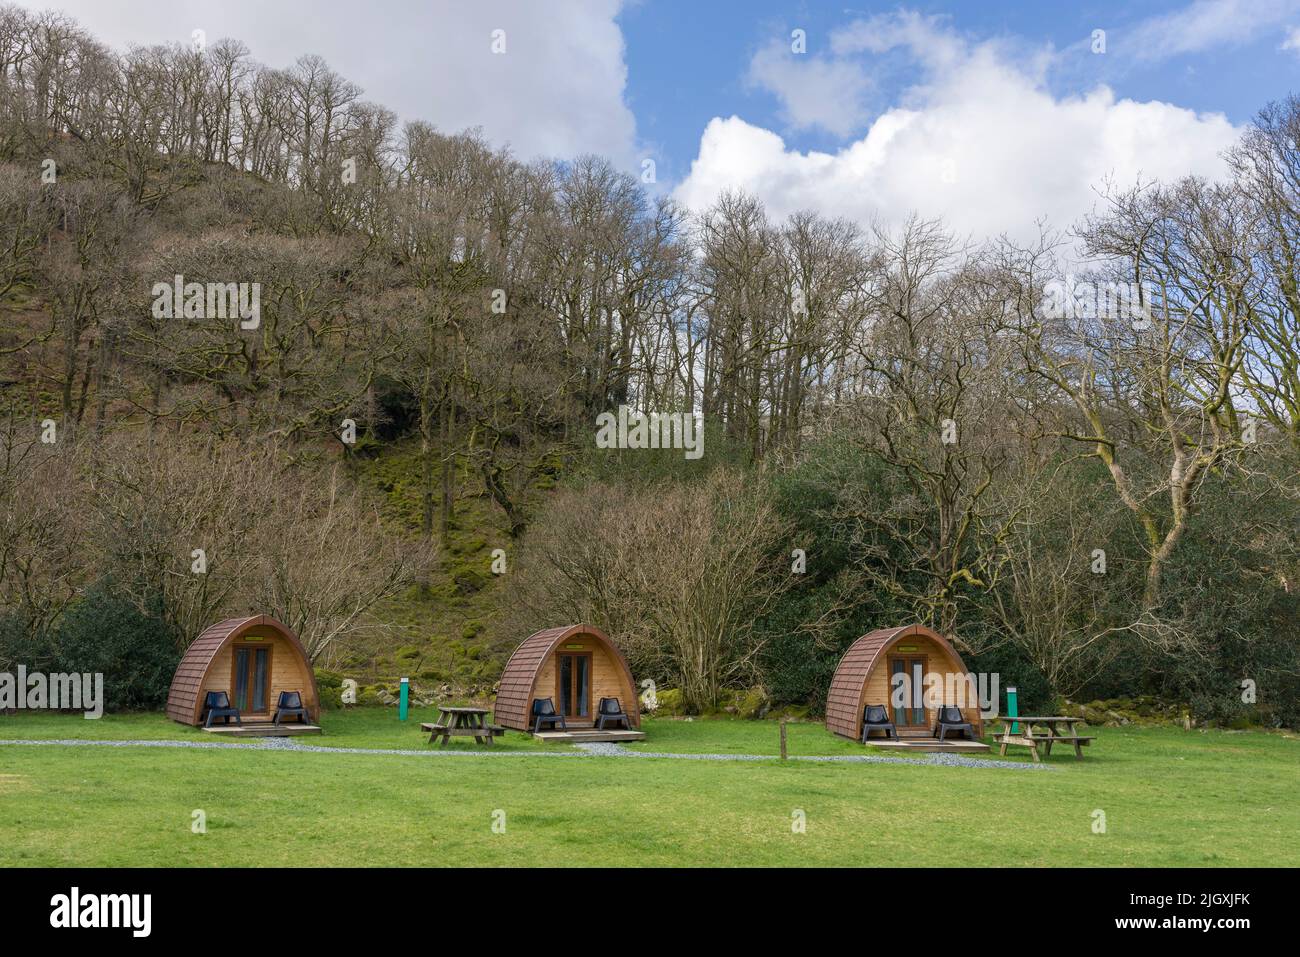 Camping PODS à la YHA Borrowdale près de Keswick dans le parc national de Lake District, Cumbria, Angleterre. Banque D'Images